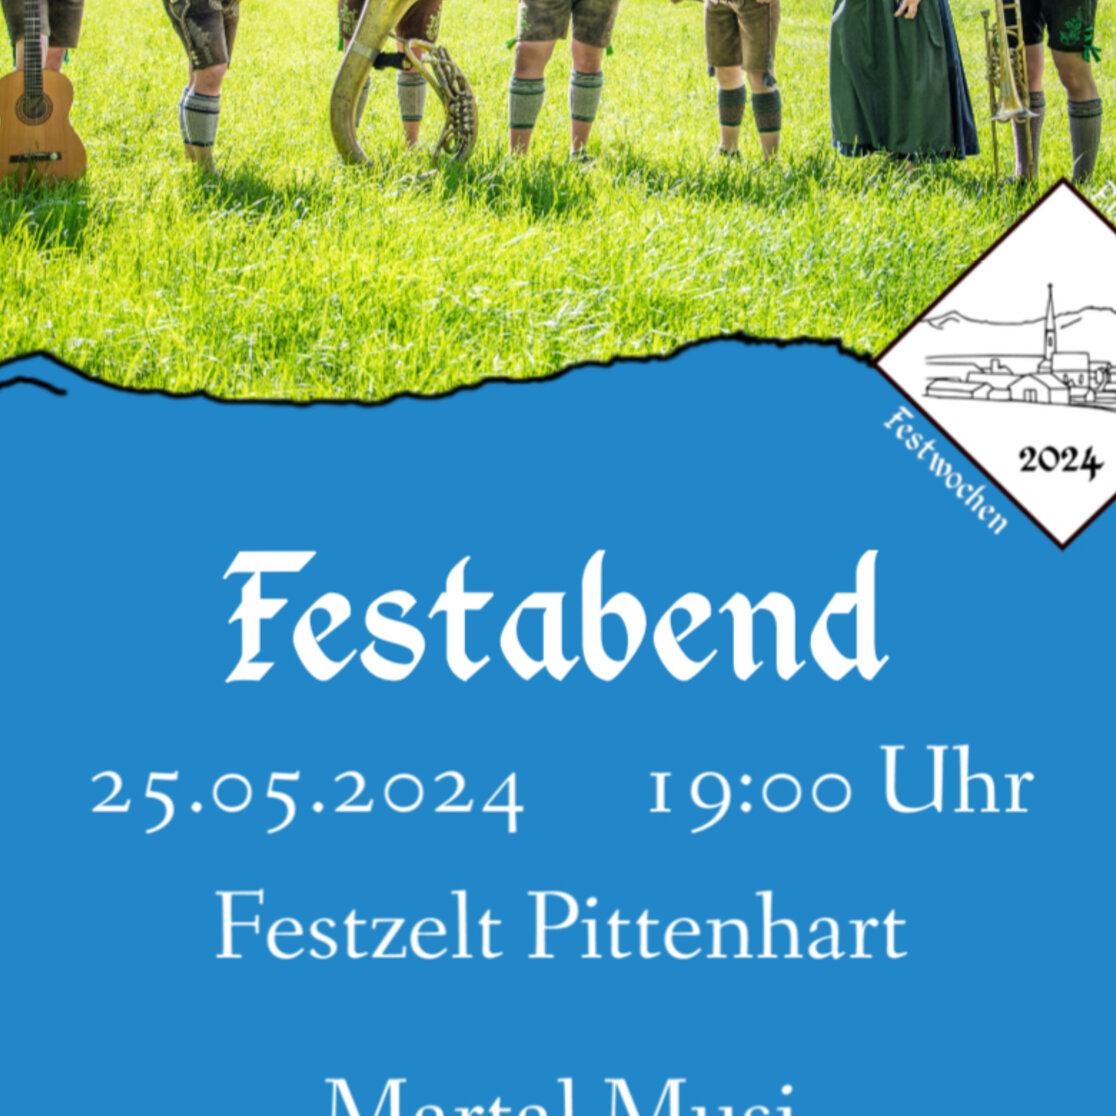 Festabend der FFW Pittenhart und des GTEV Almfrieden Aindorf-Pittenhart